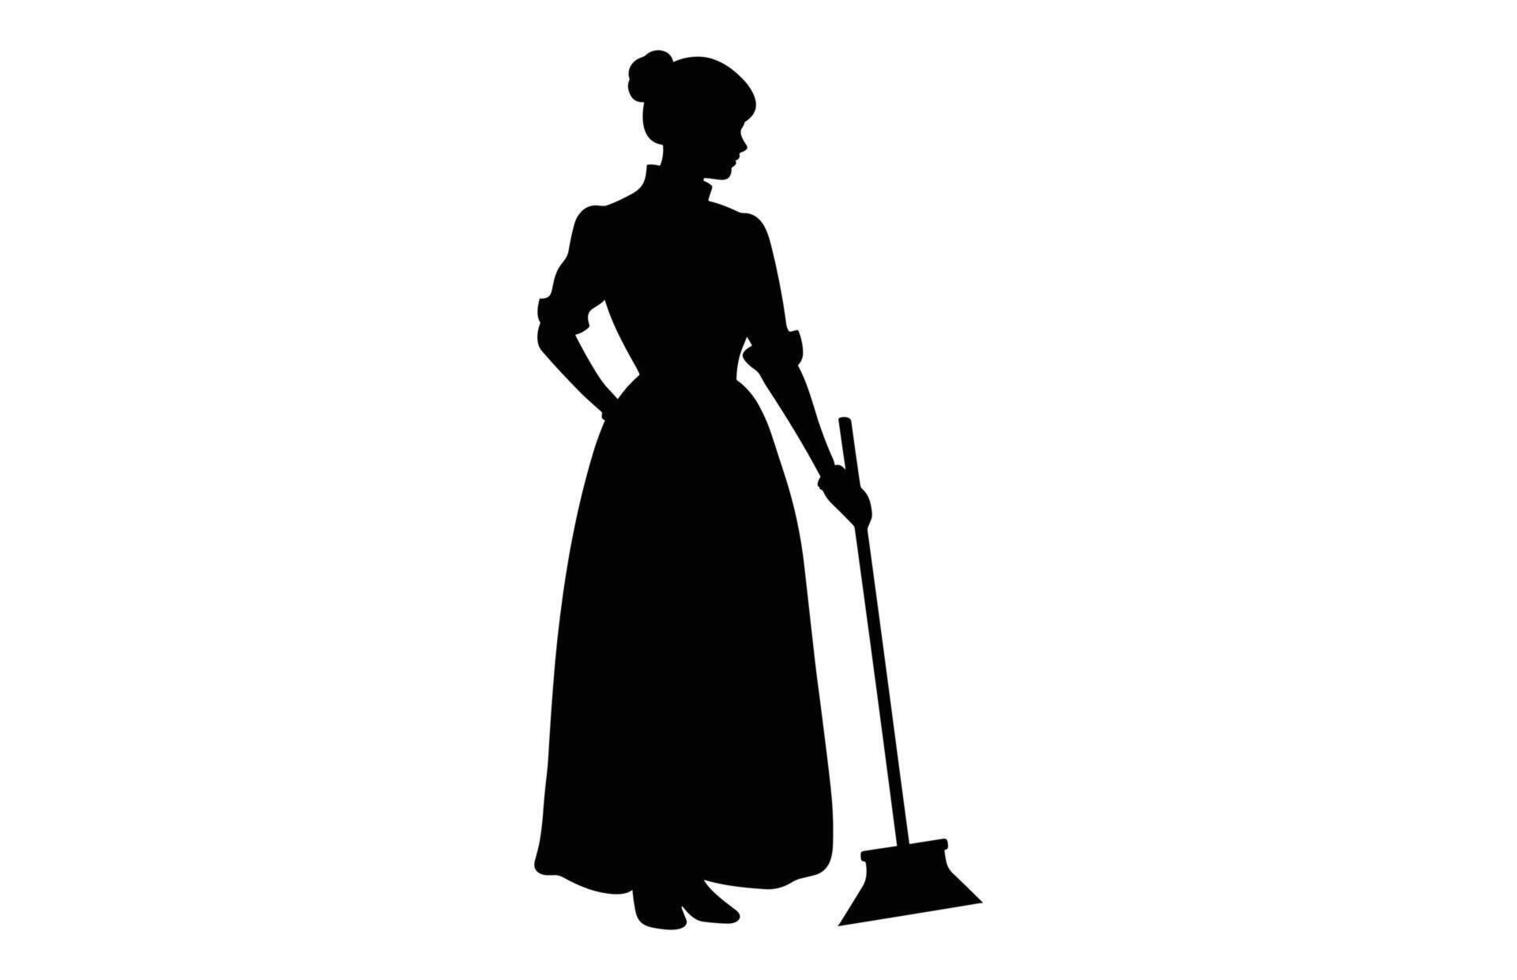 limpeza senhora Preto clipart, varredor menina Preto e branco vetor, mulher limpador silhueta isolado em uma branco fundo vetor